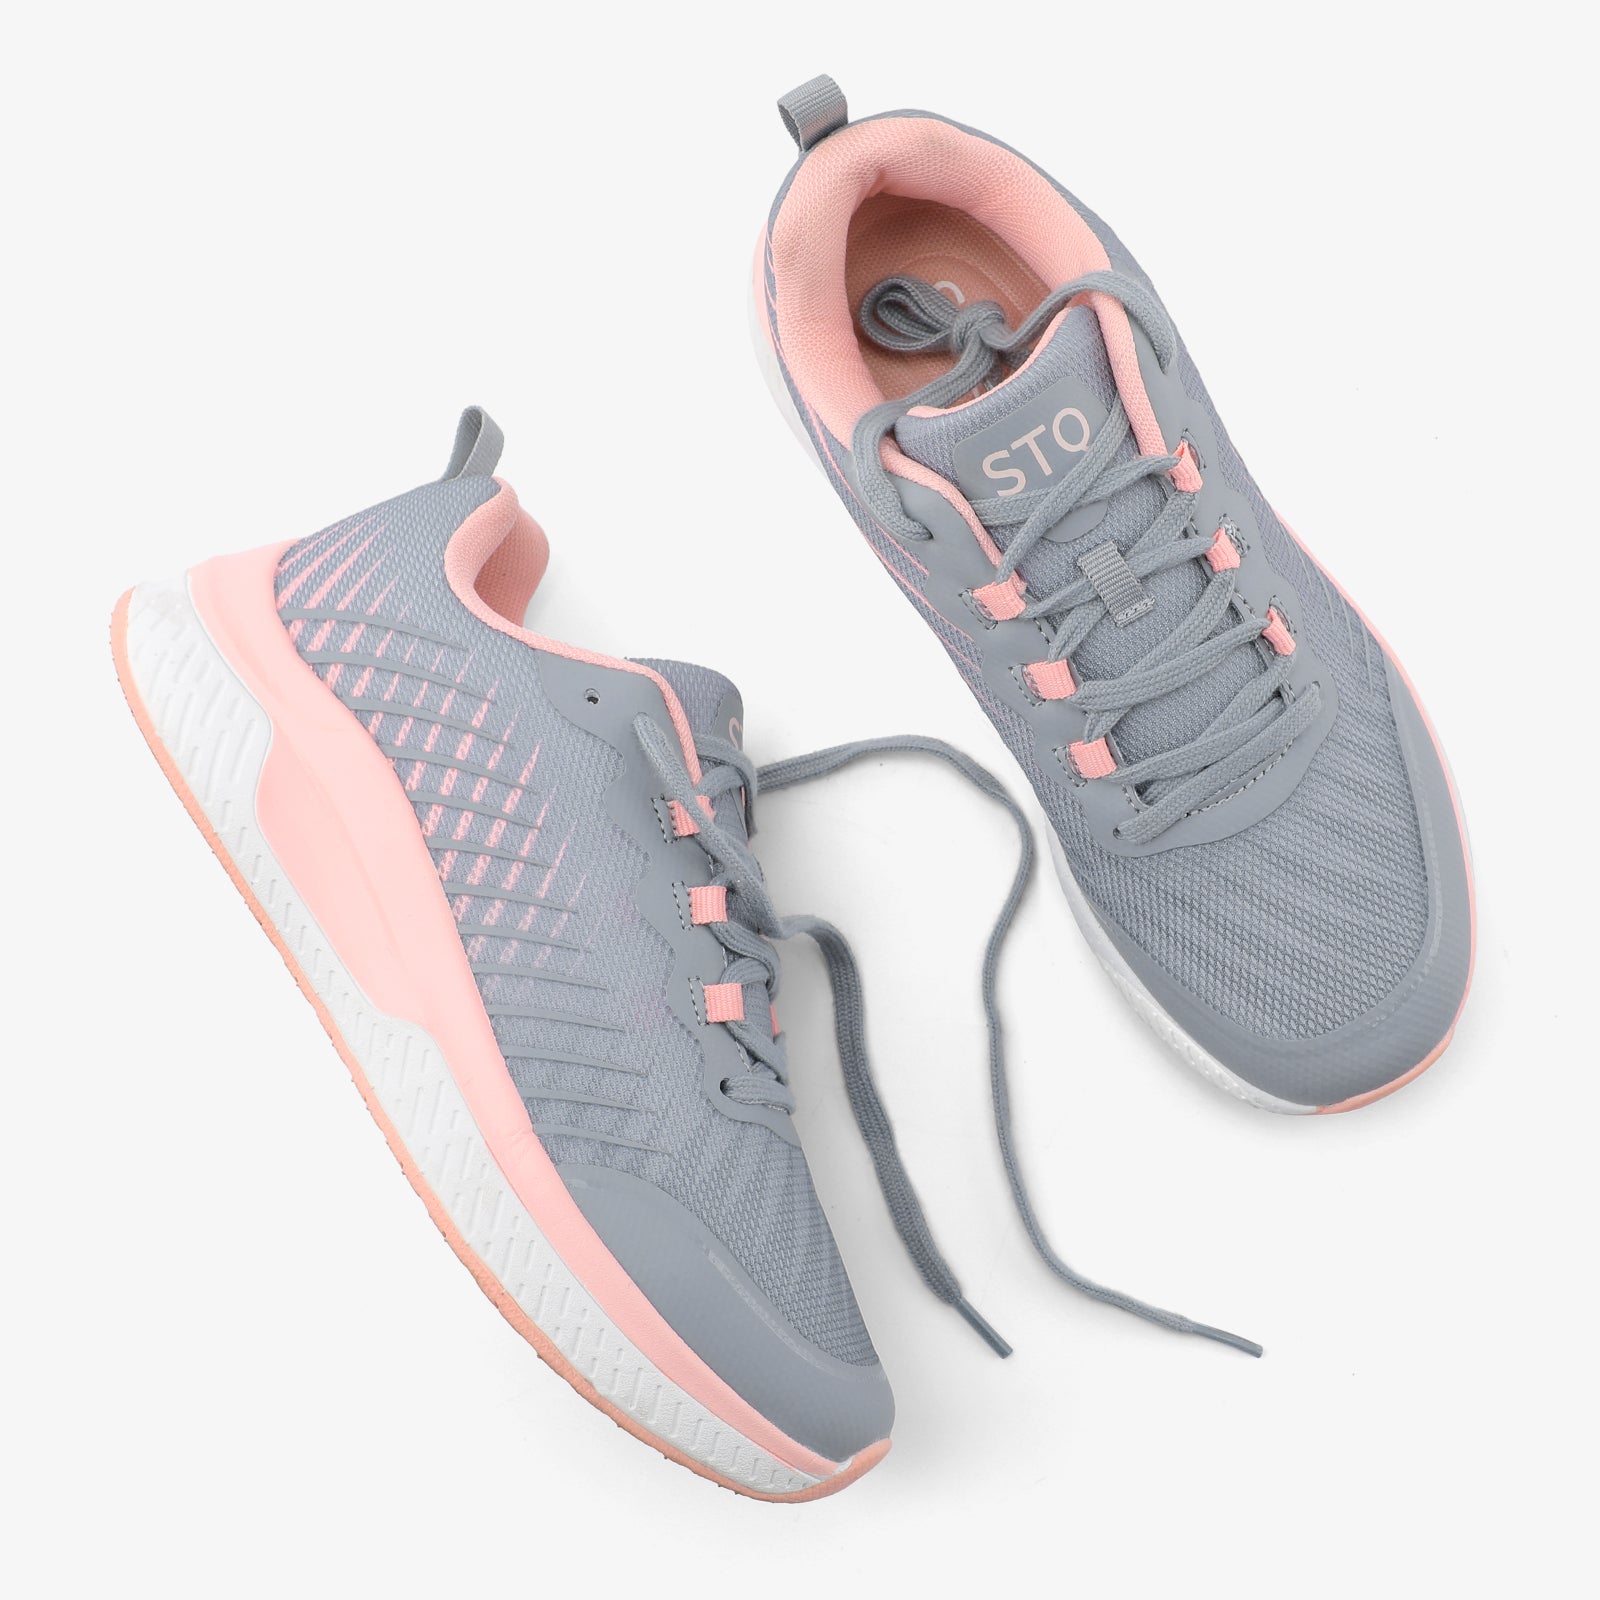 stq-fashion-sneakers-grey-pink-view